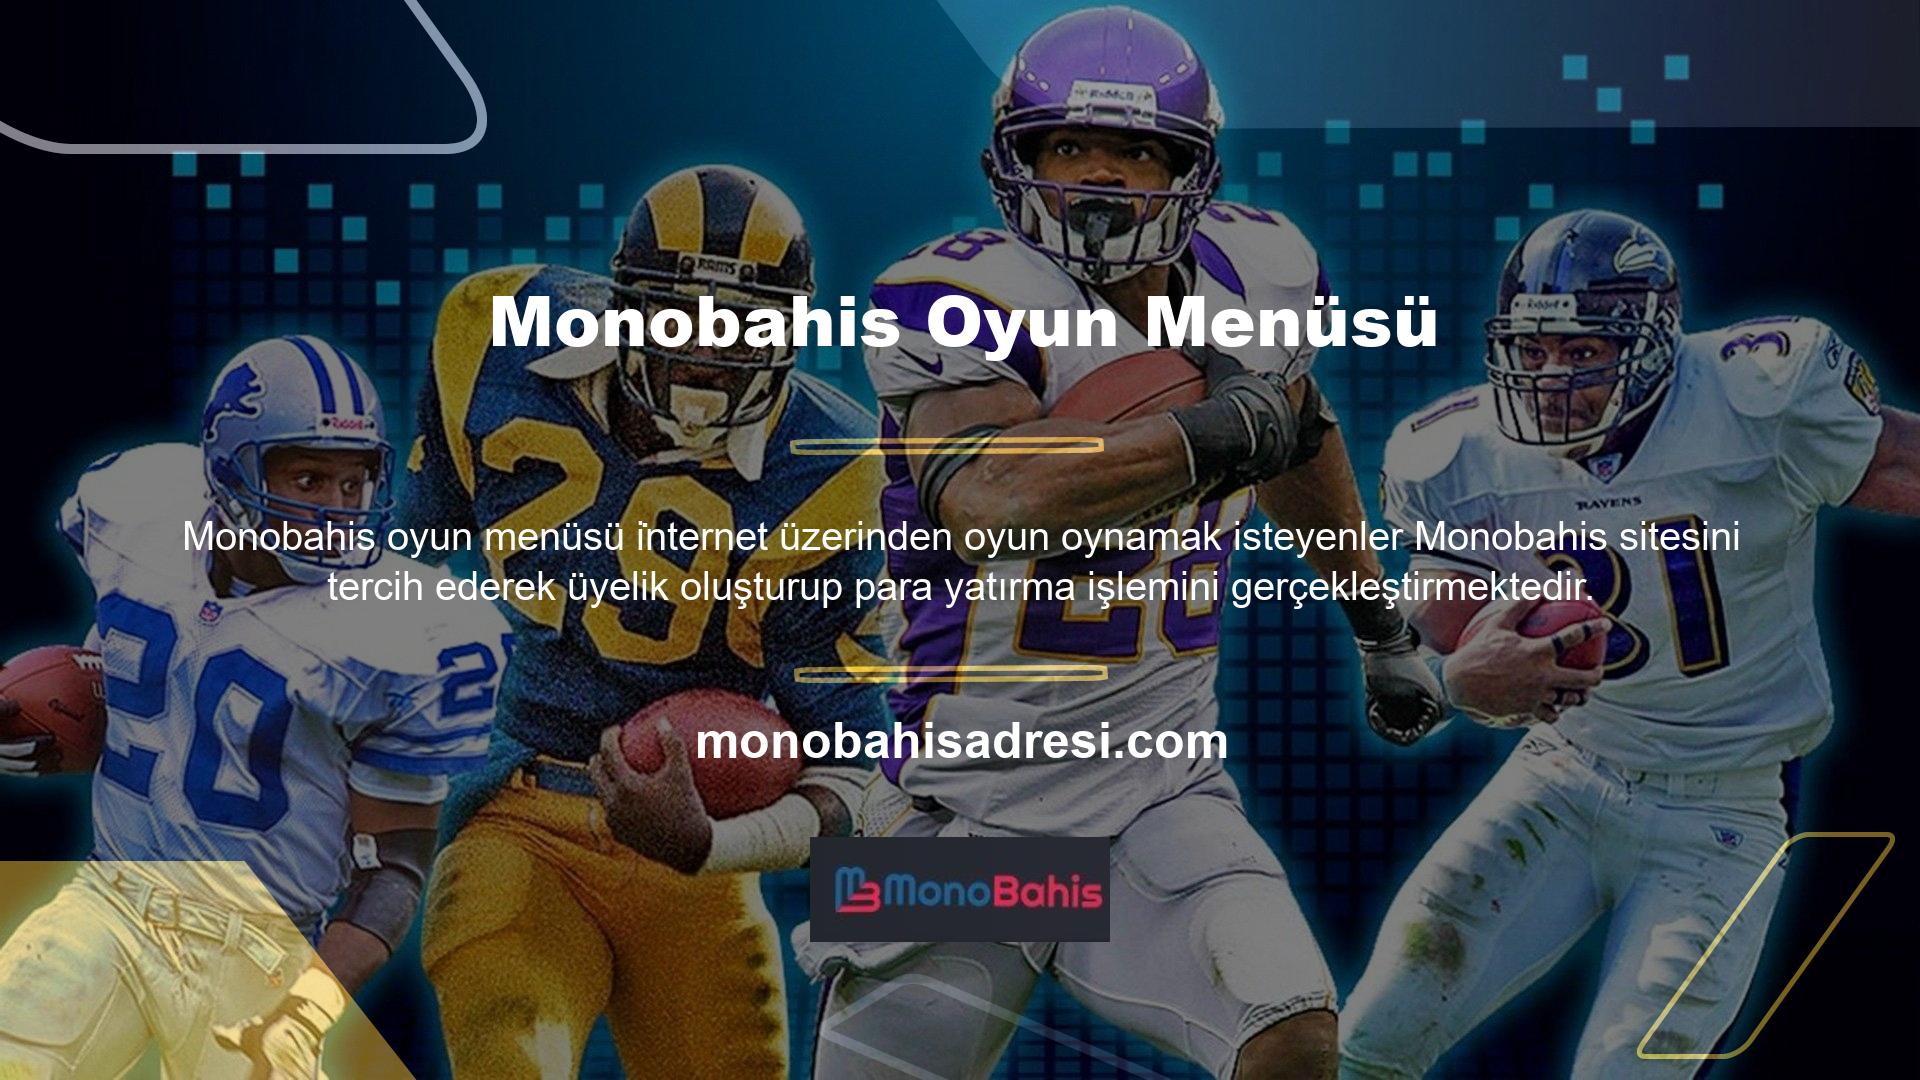 Monobahis ana sayfası, tüm kullanıcılara oyun menü alanını ve oyun adını gösterir